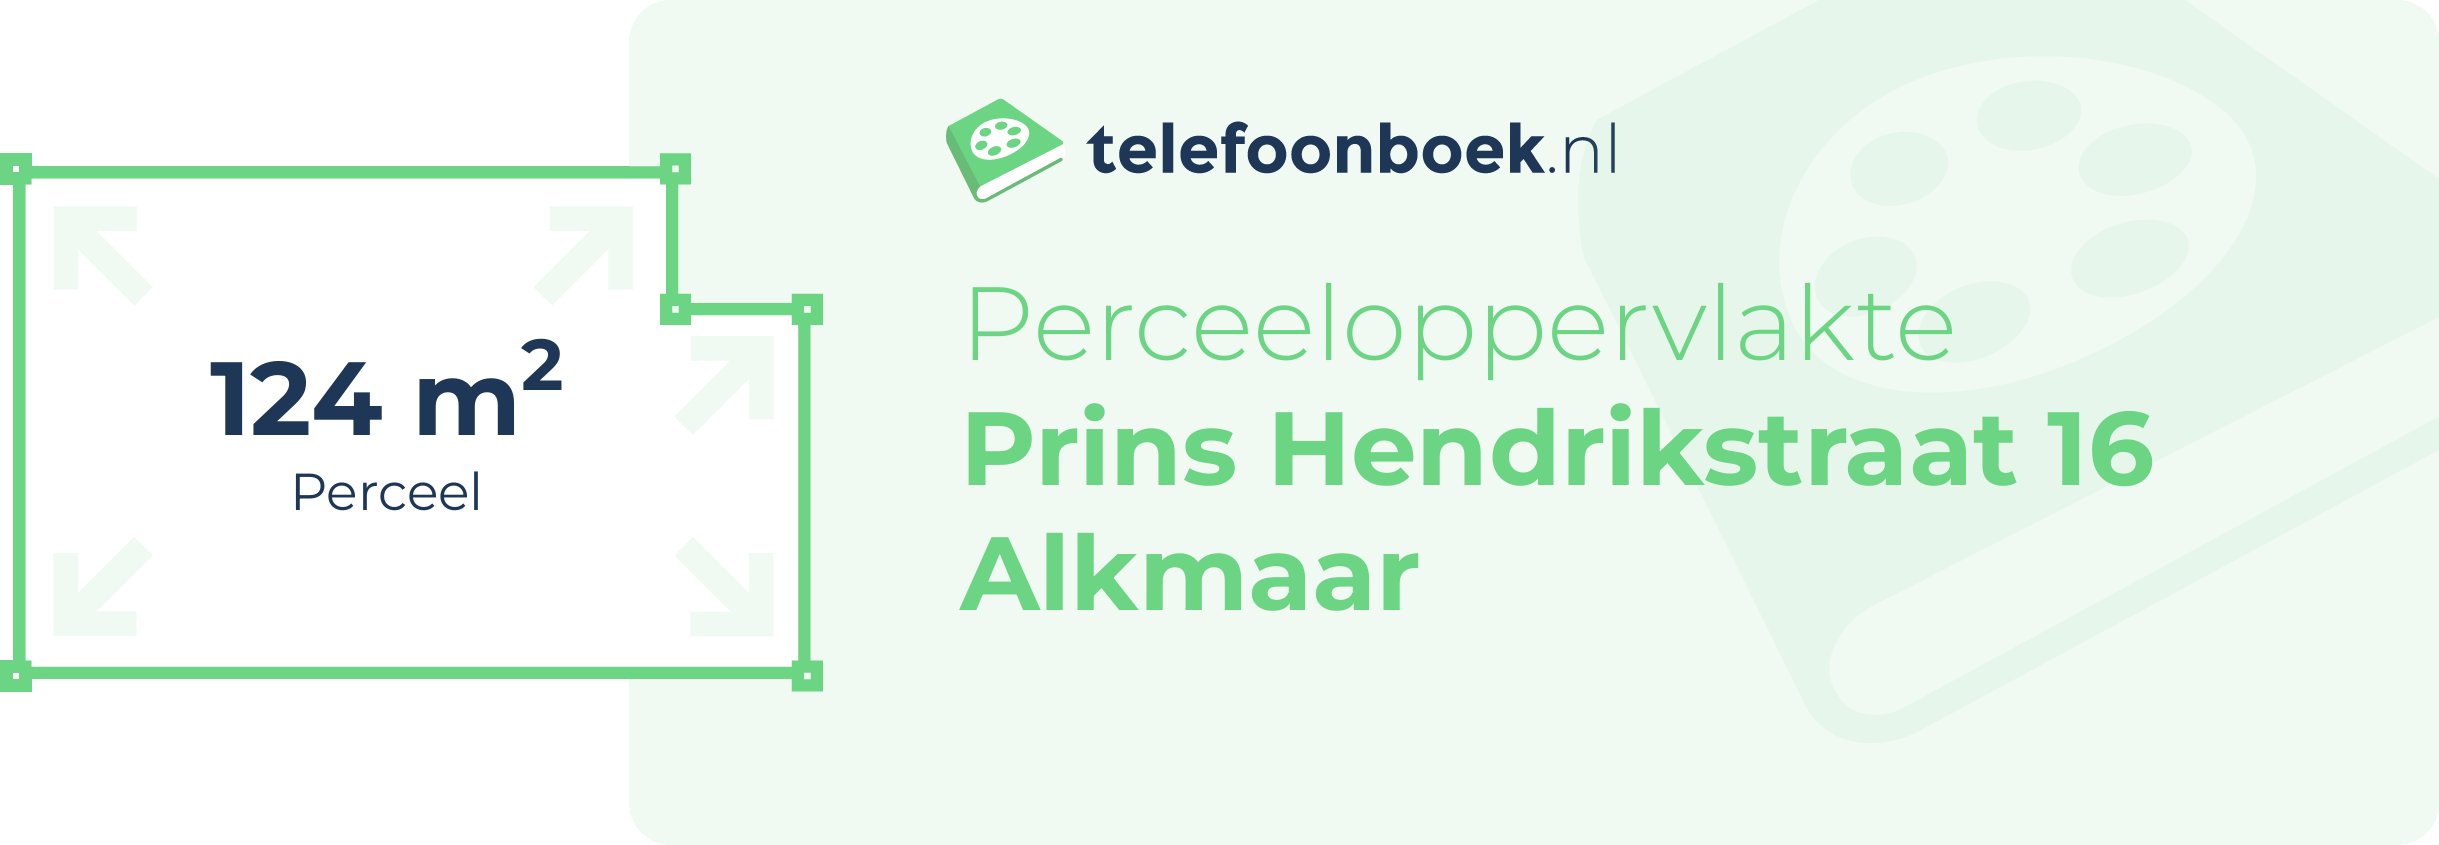 Perceeloppervlakte Prins Hendrikstraat 16 Alkmaar